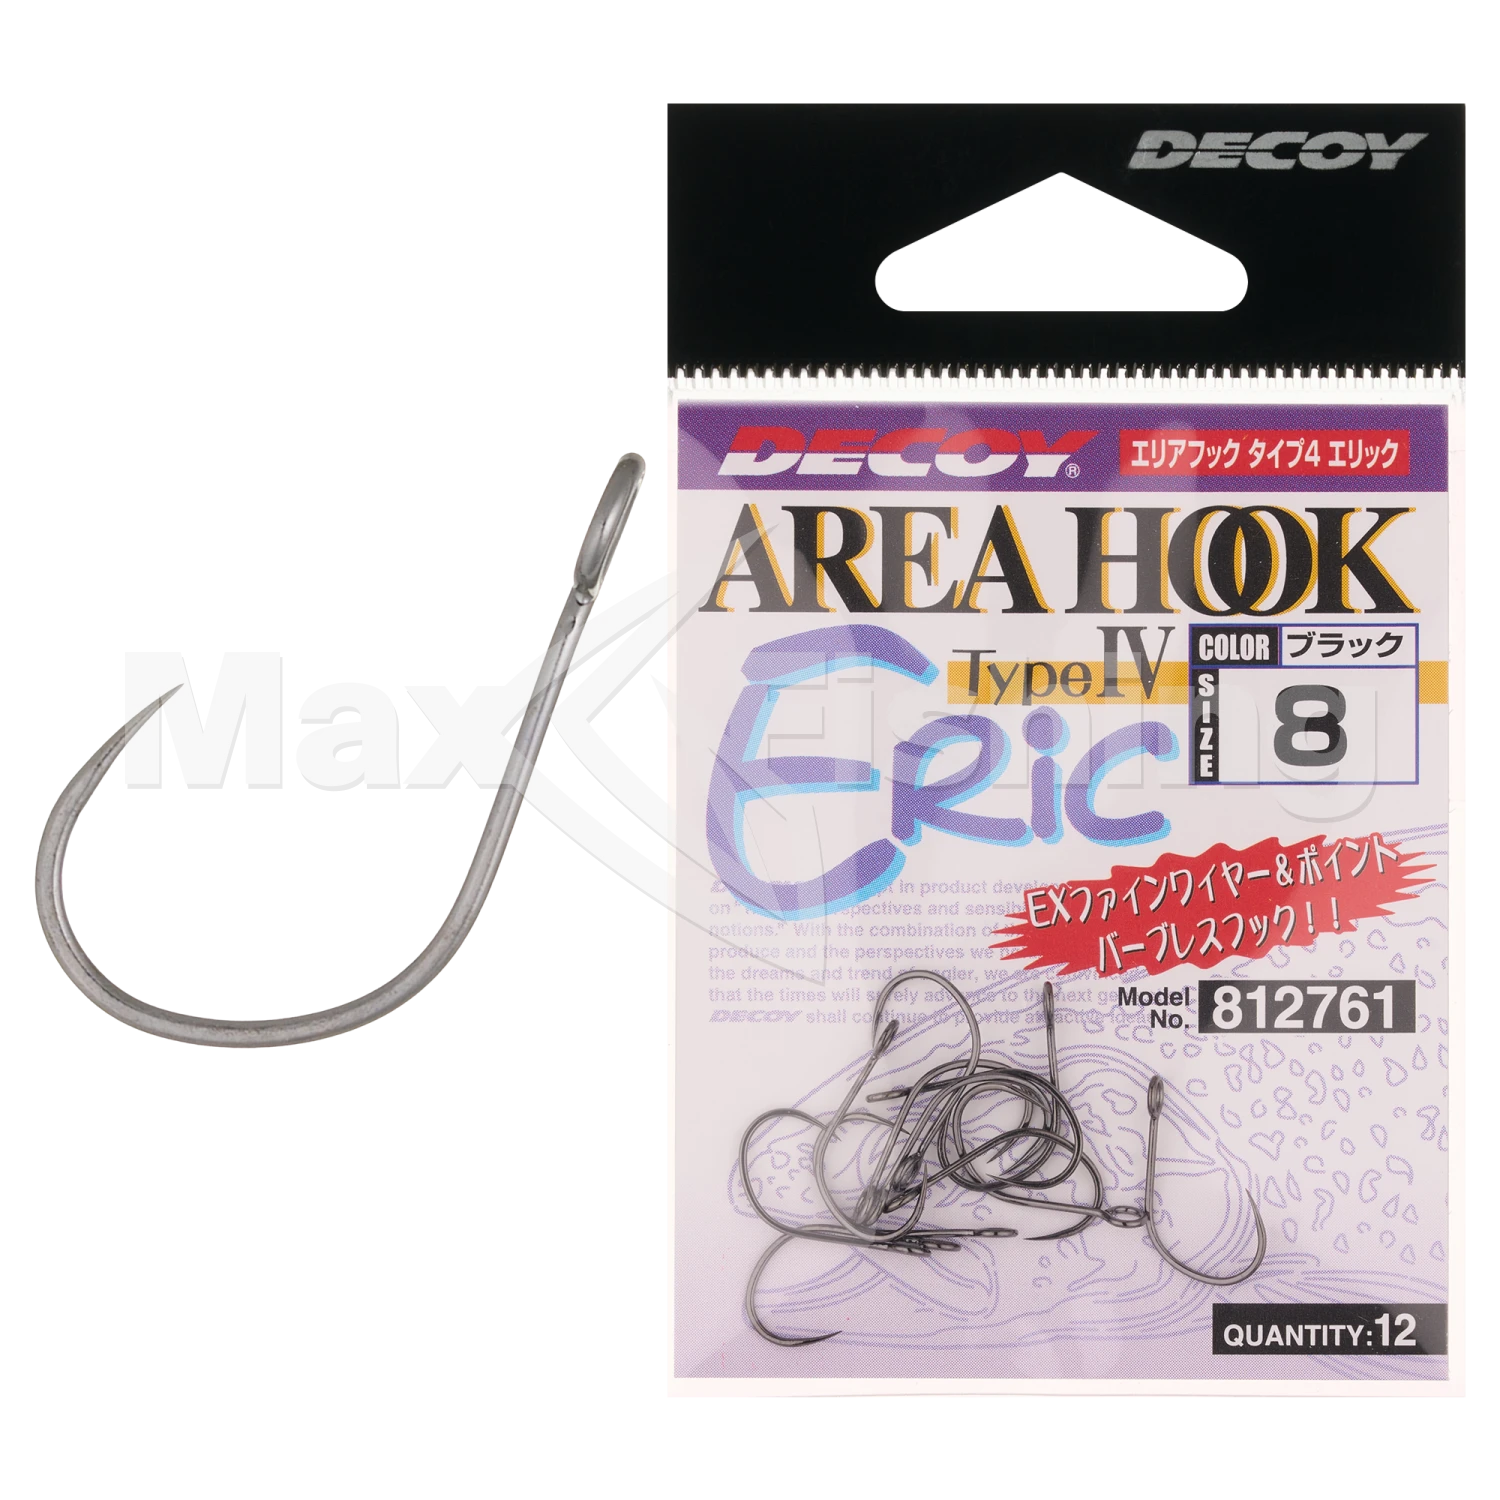 Крючок одинарный Decoy AH-4 Area Hook Eric #8 (12шт)